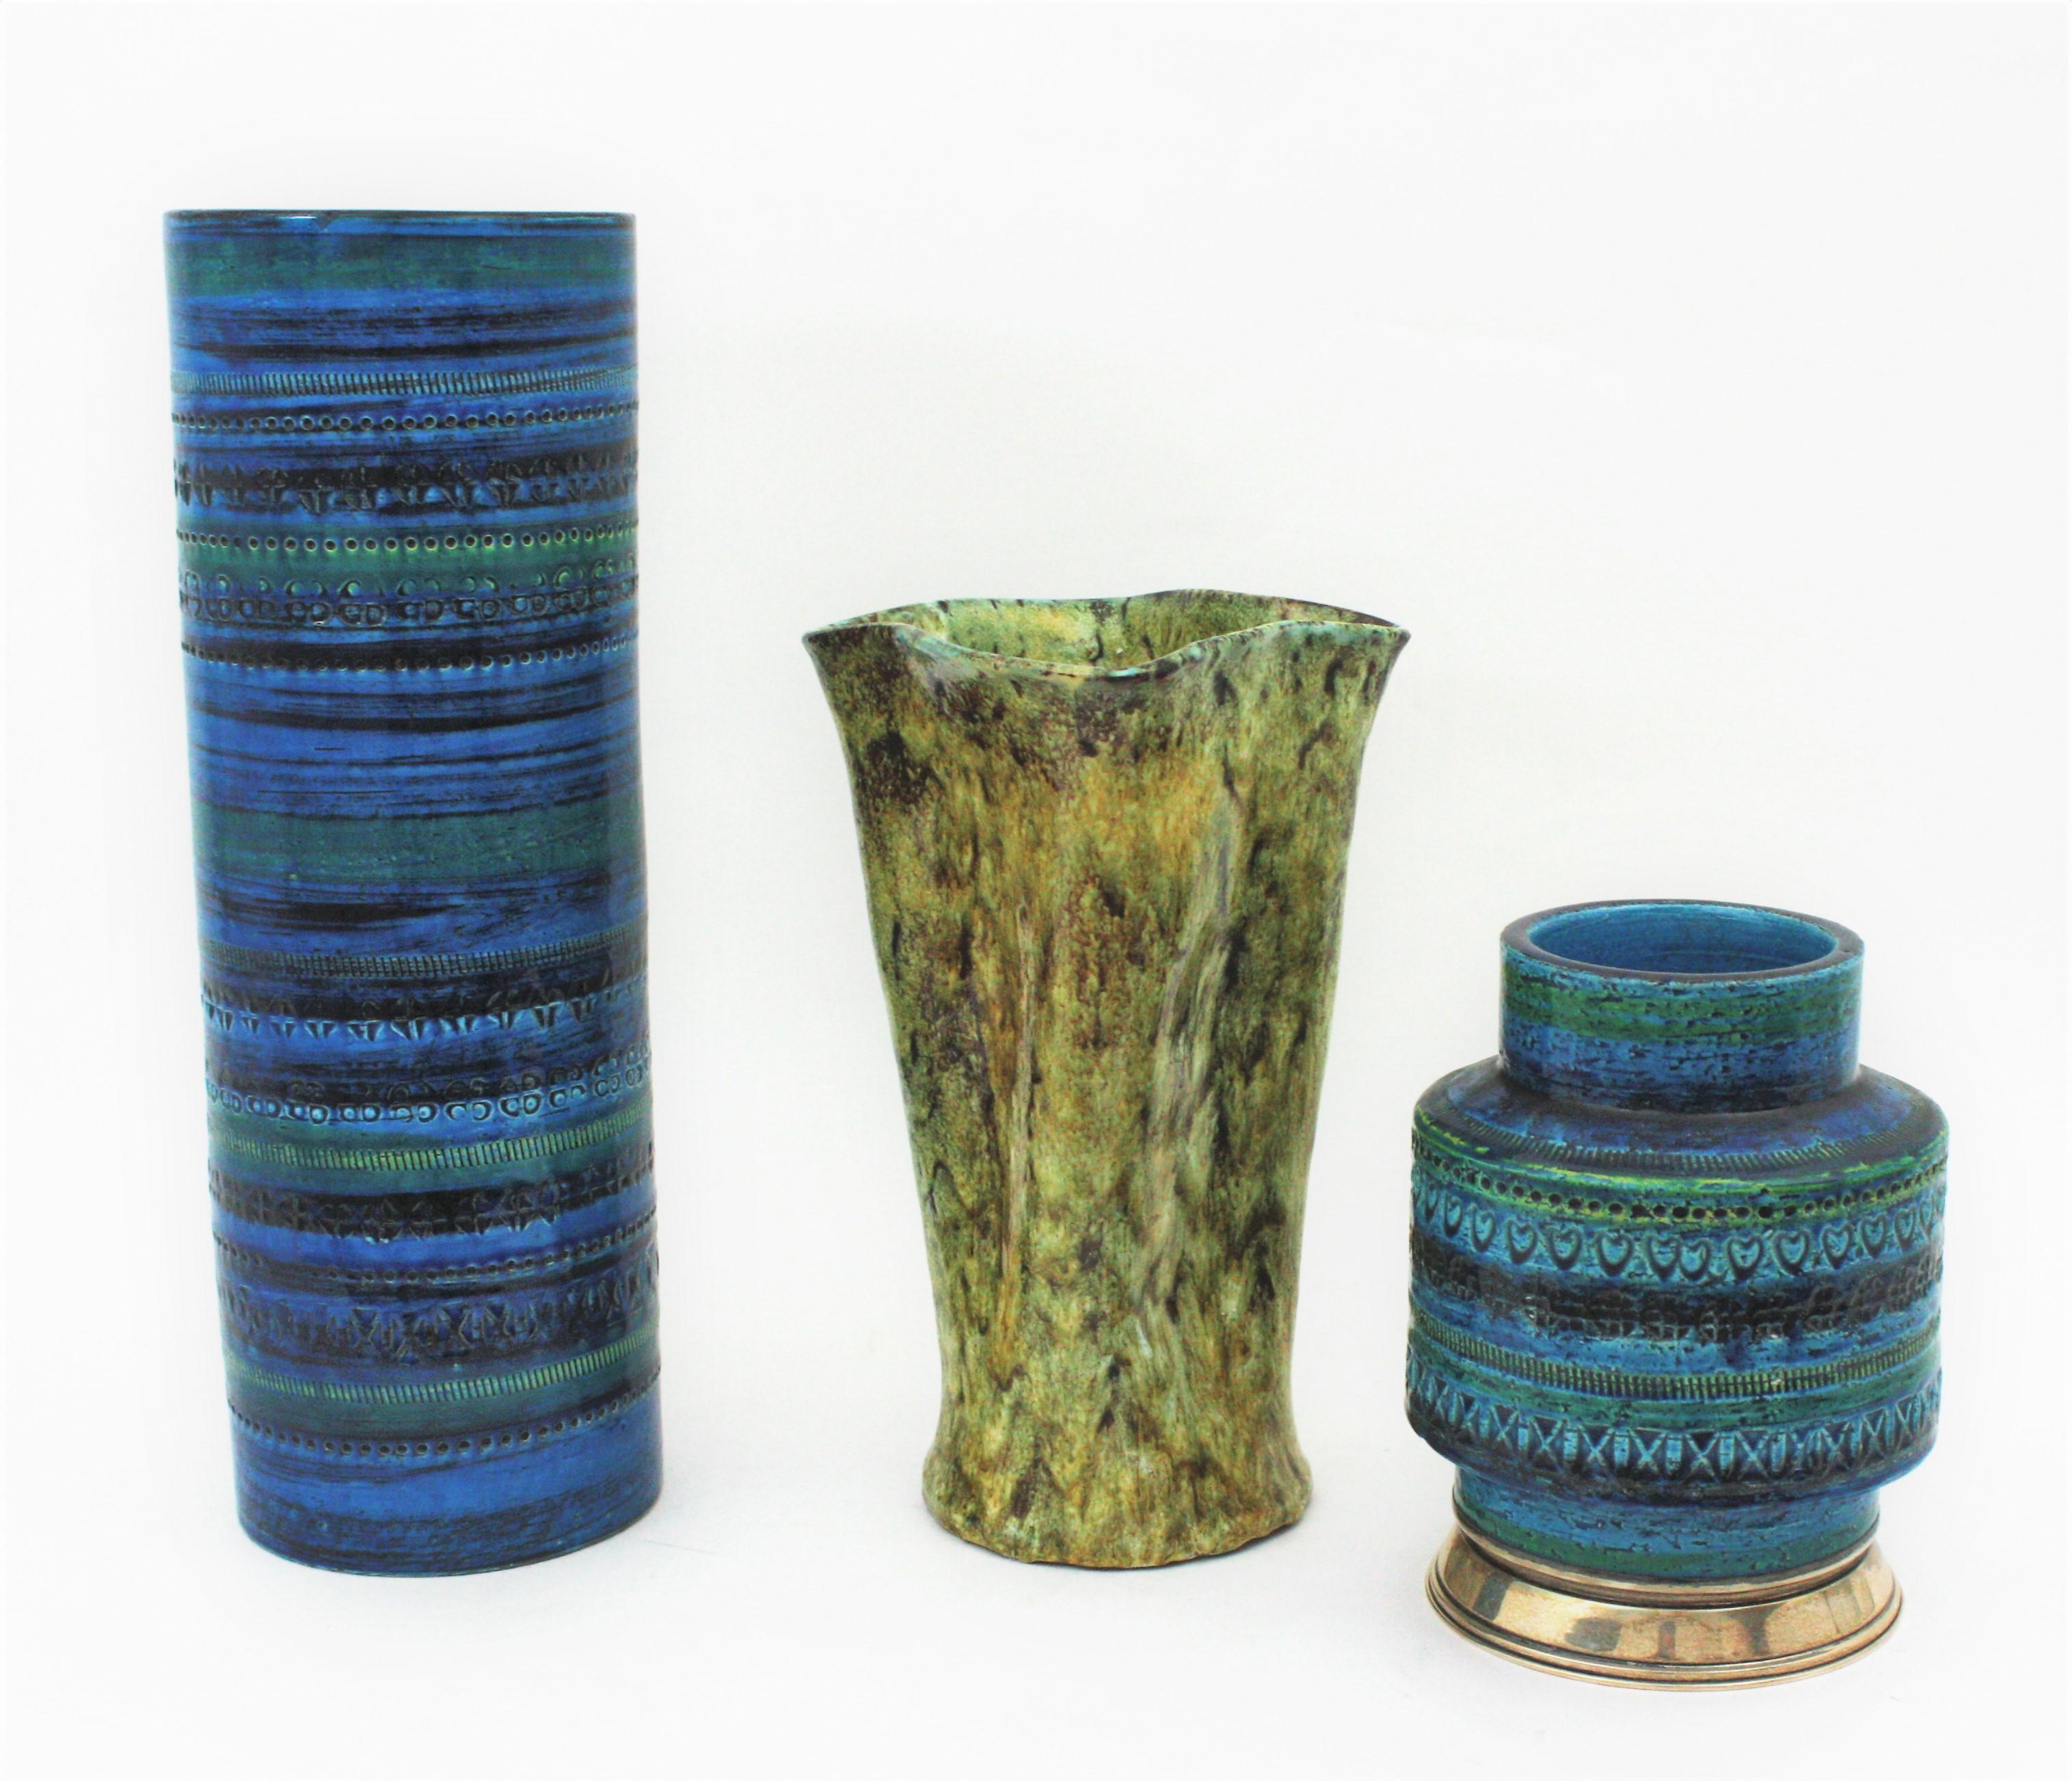 Aldo Londi Bitossi Rimini Blue Glazed Ceramic XL Vase, Italy, 1960s In Good Condition For Sale In Barcelona, ES